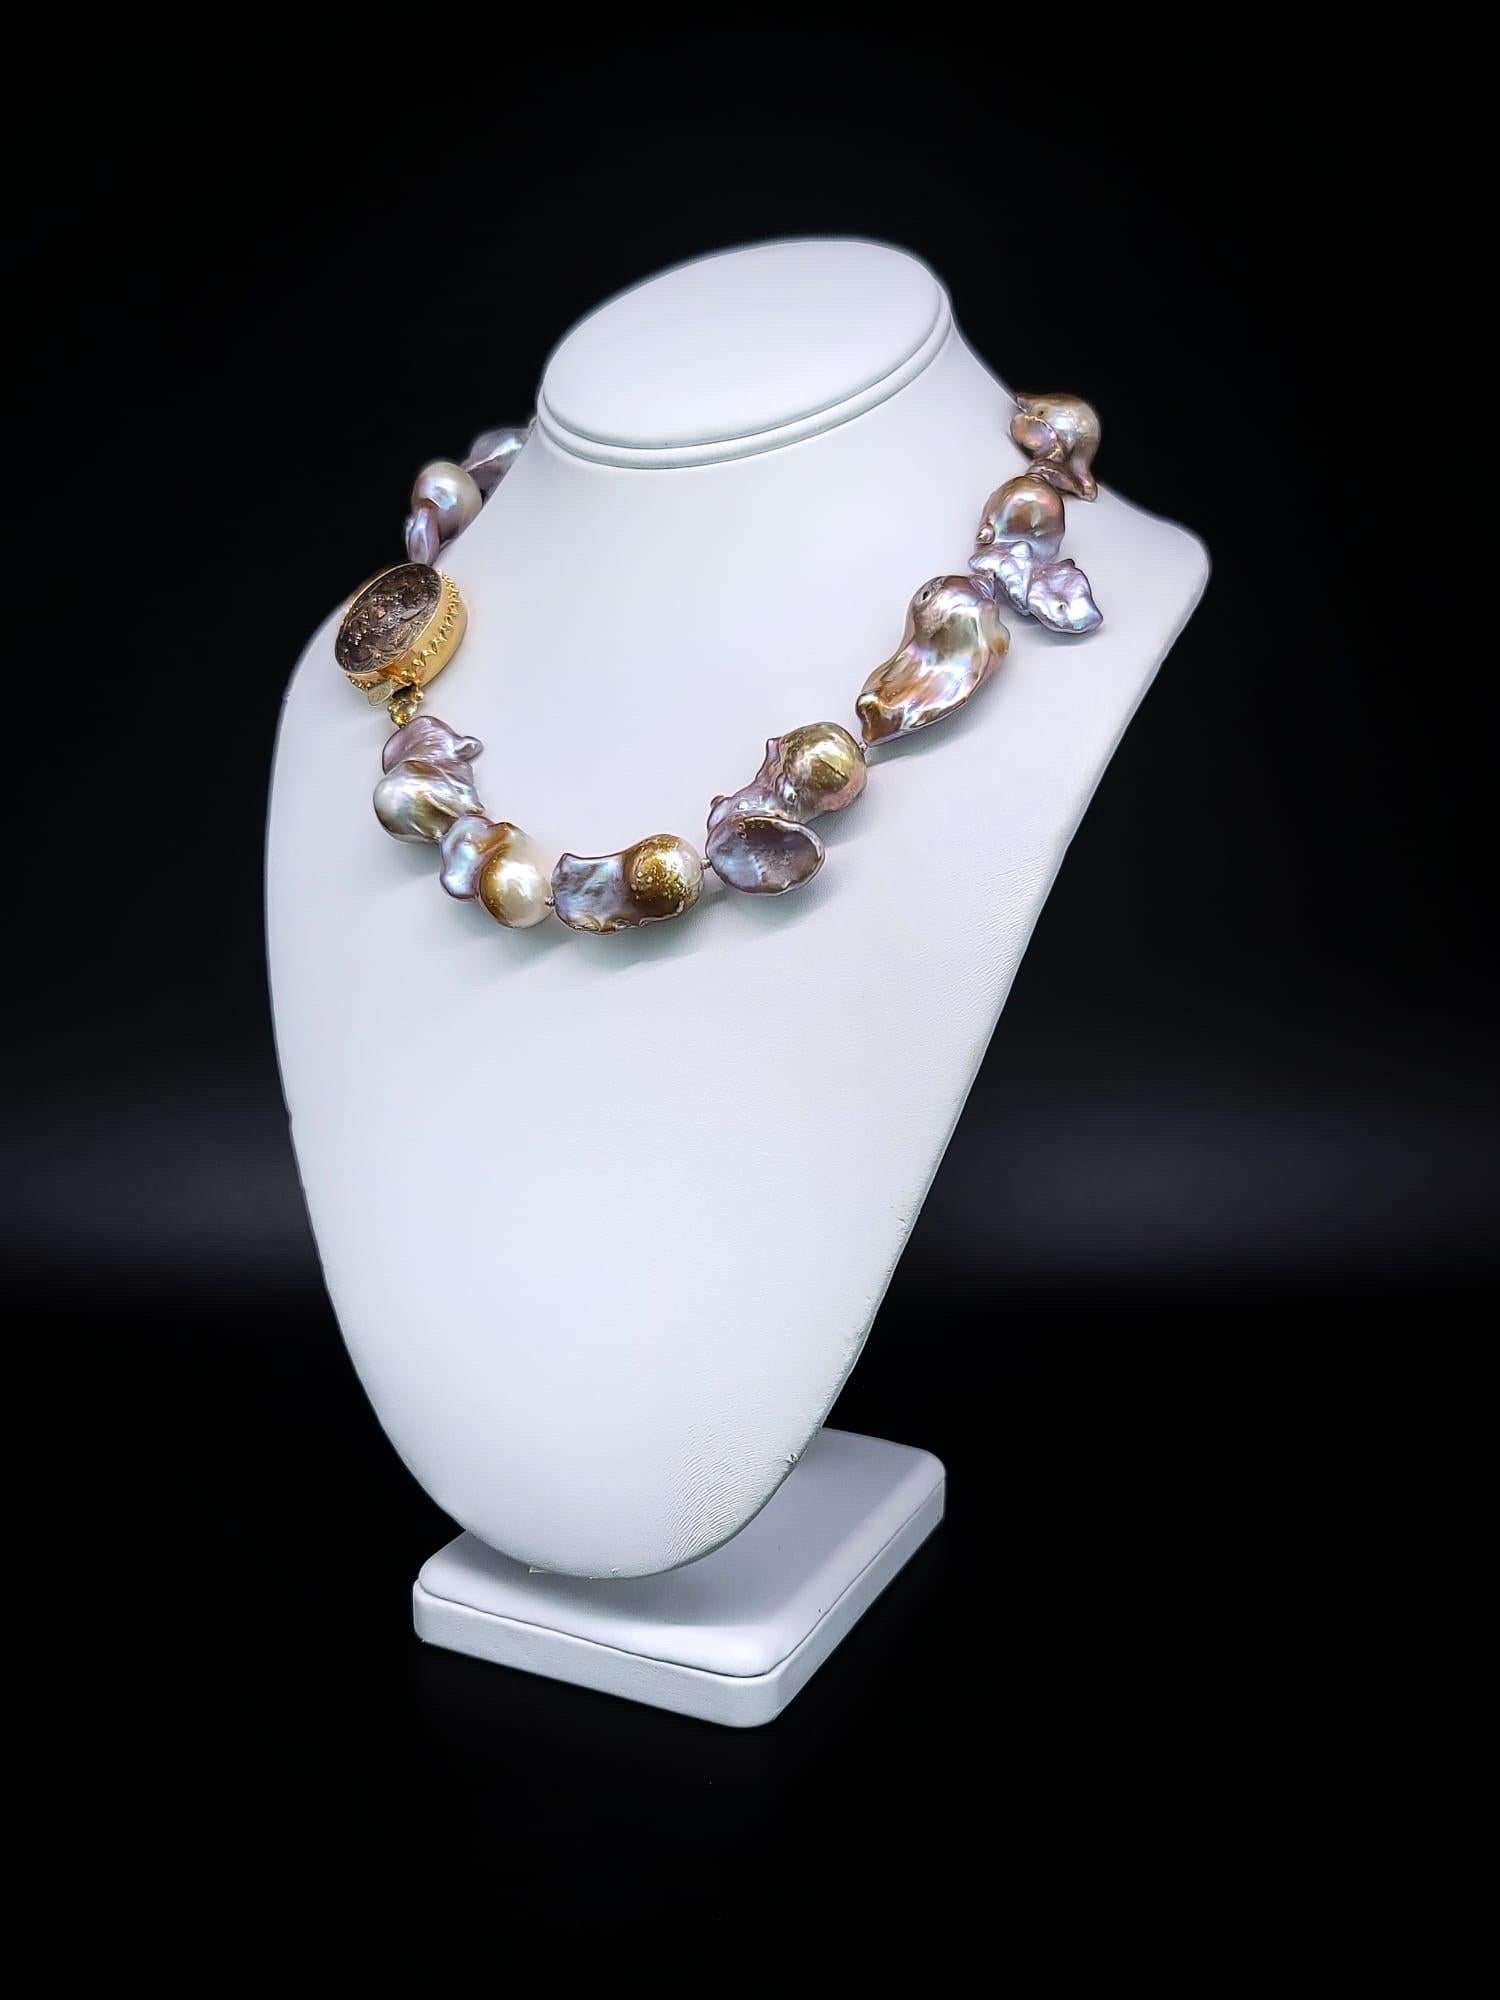 Unicité exquise. Au-delà des rangs de perles ordinaires se trouve une pièce vraiment remarquable - un collier orné de perles baroques captivantes. Ces perles dégagent un charme irrésistible, avec leur séduisante transition ombrée de tons argentés à